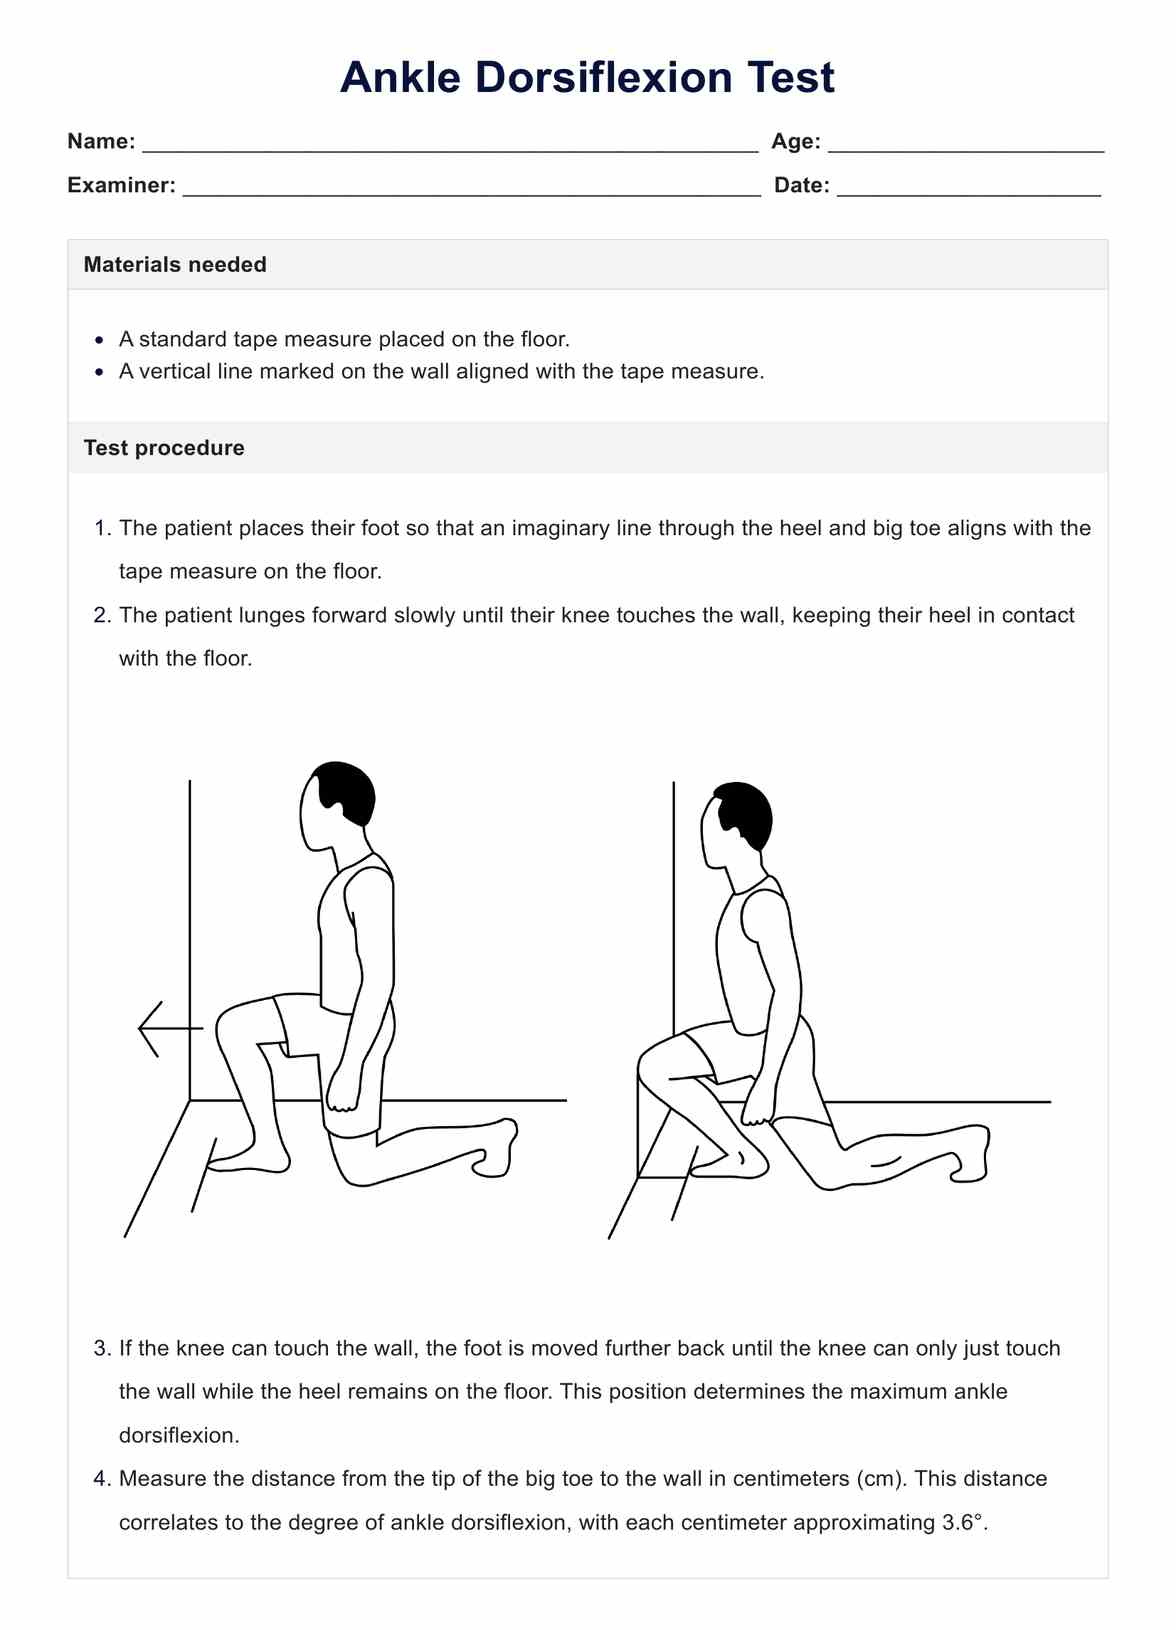 Ankle Dorsiflexion Test PDF Example